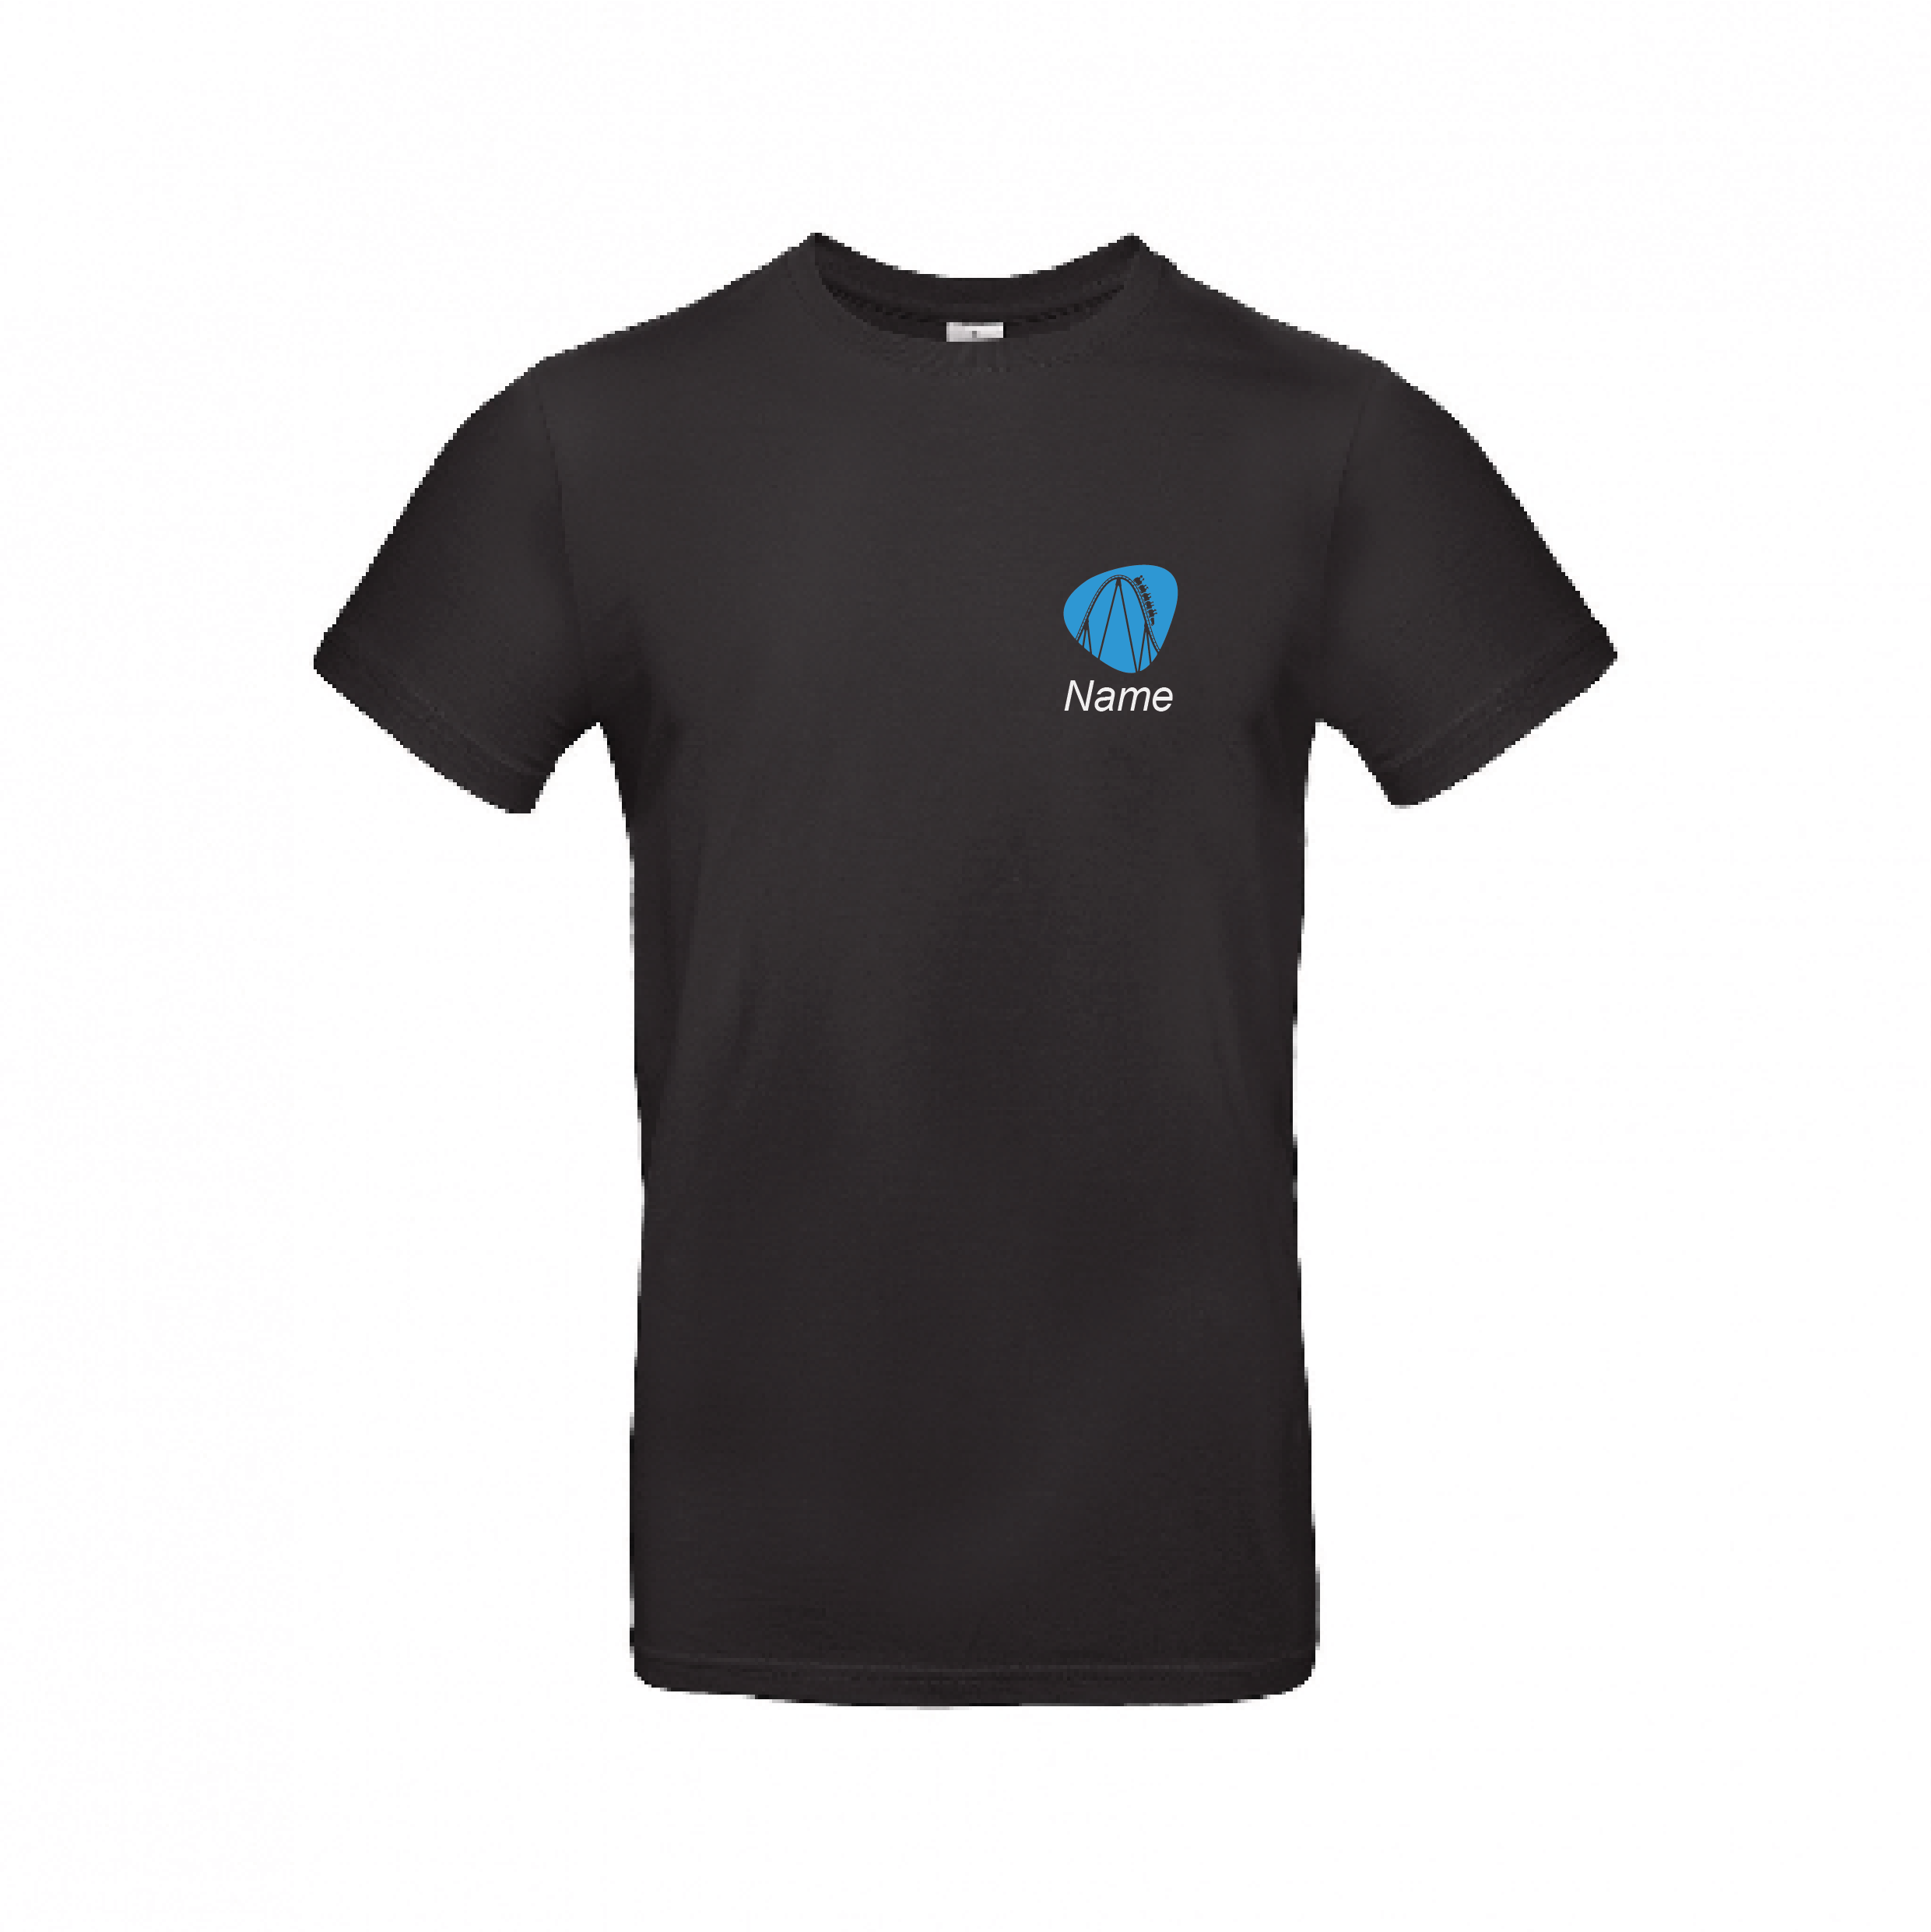 Unisex T-Shirt - Farbe schwarz mit blauer Schrift mit App Werbung inkl. Name und Versand